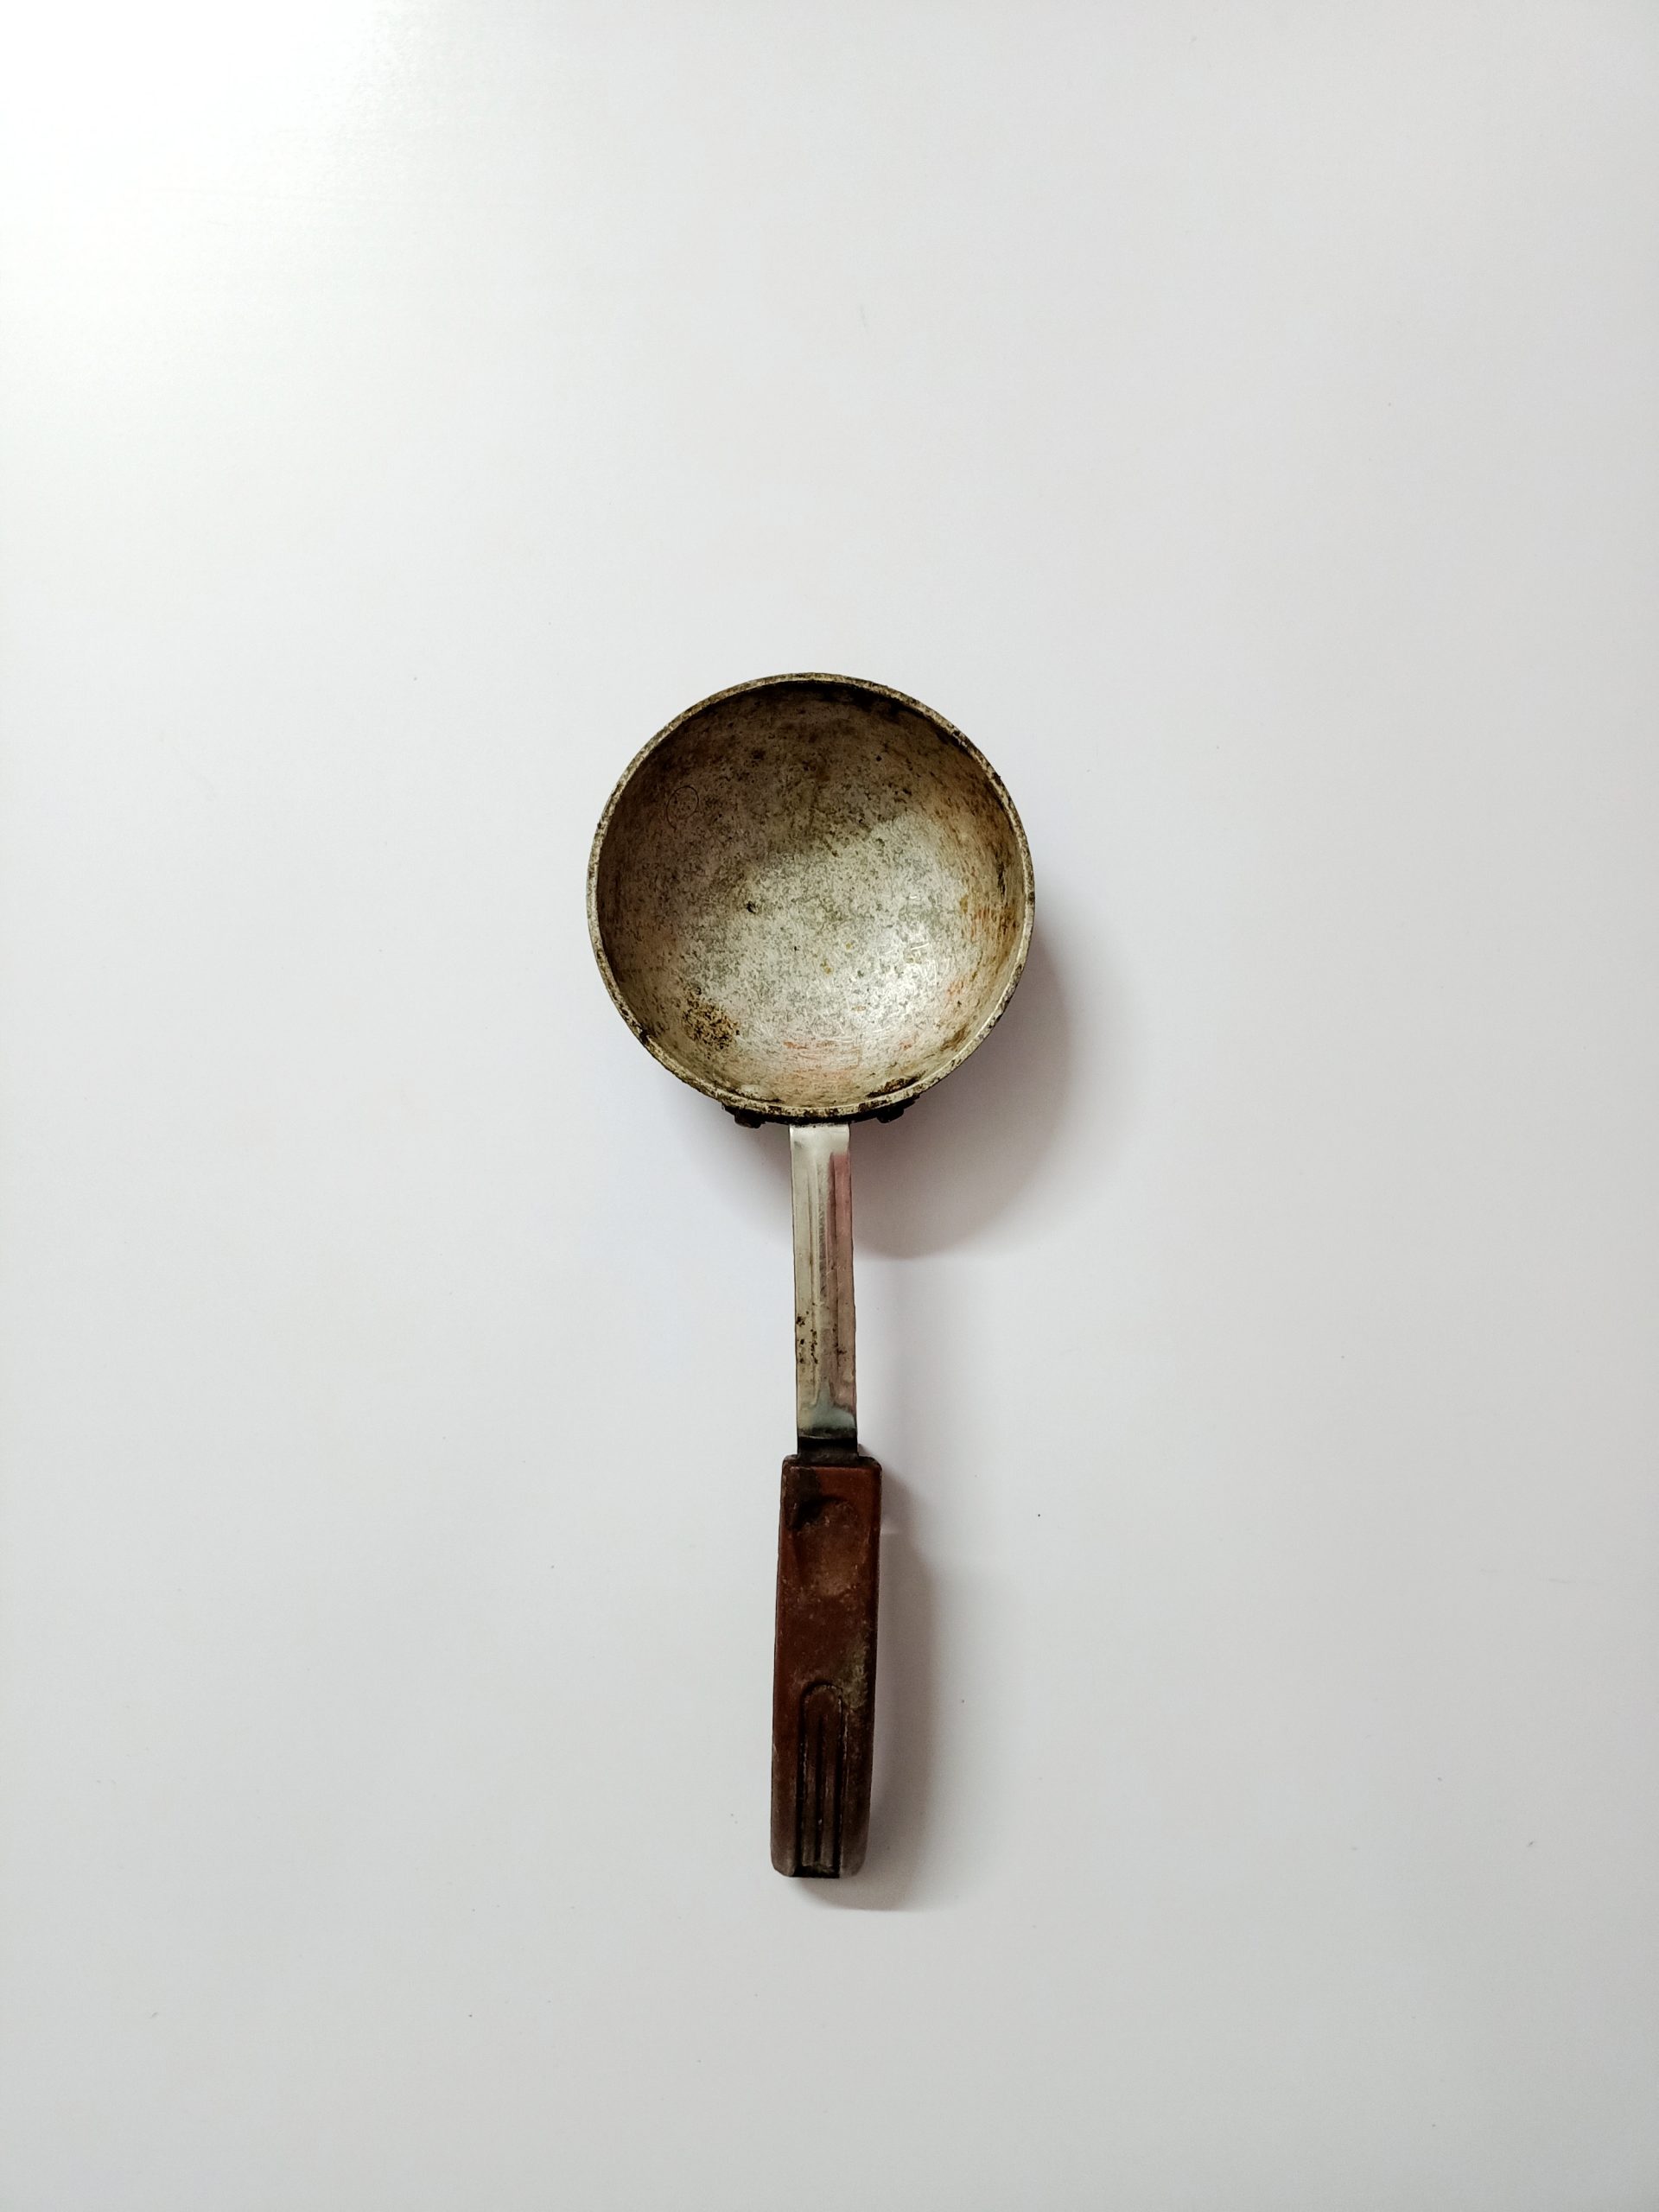 An utensil